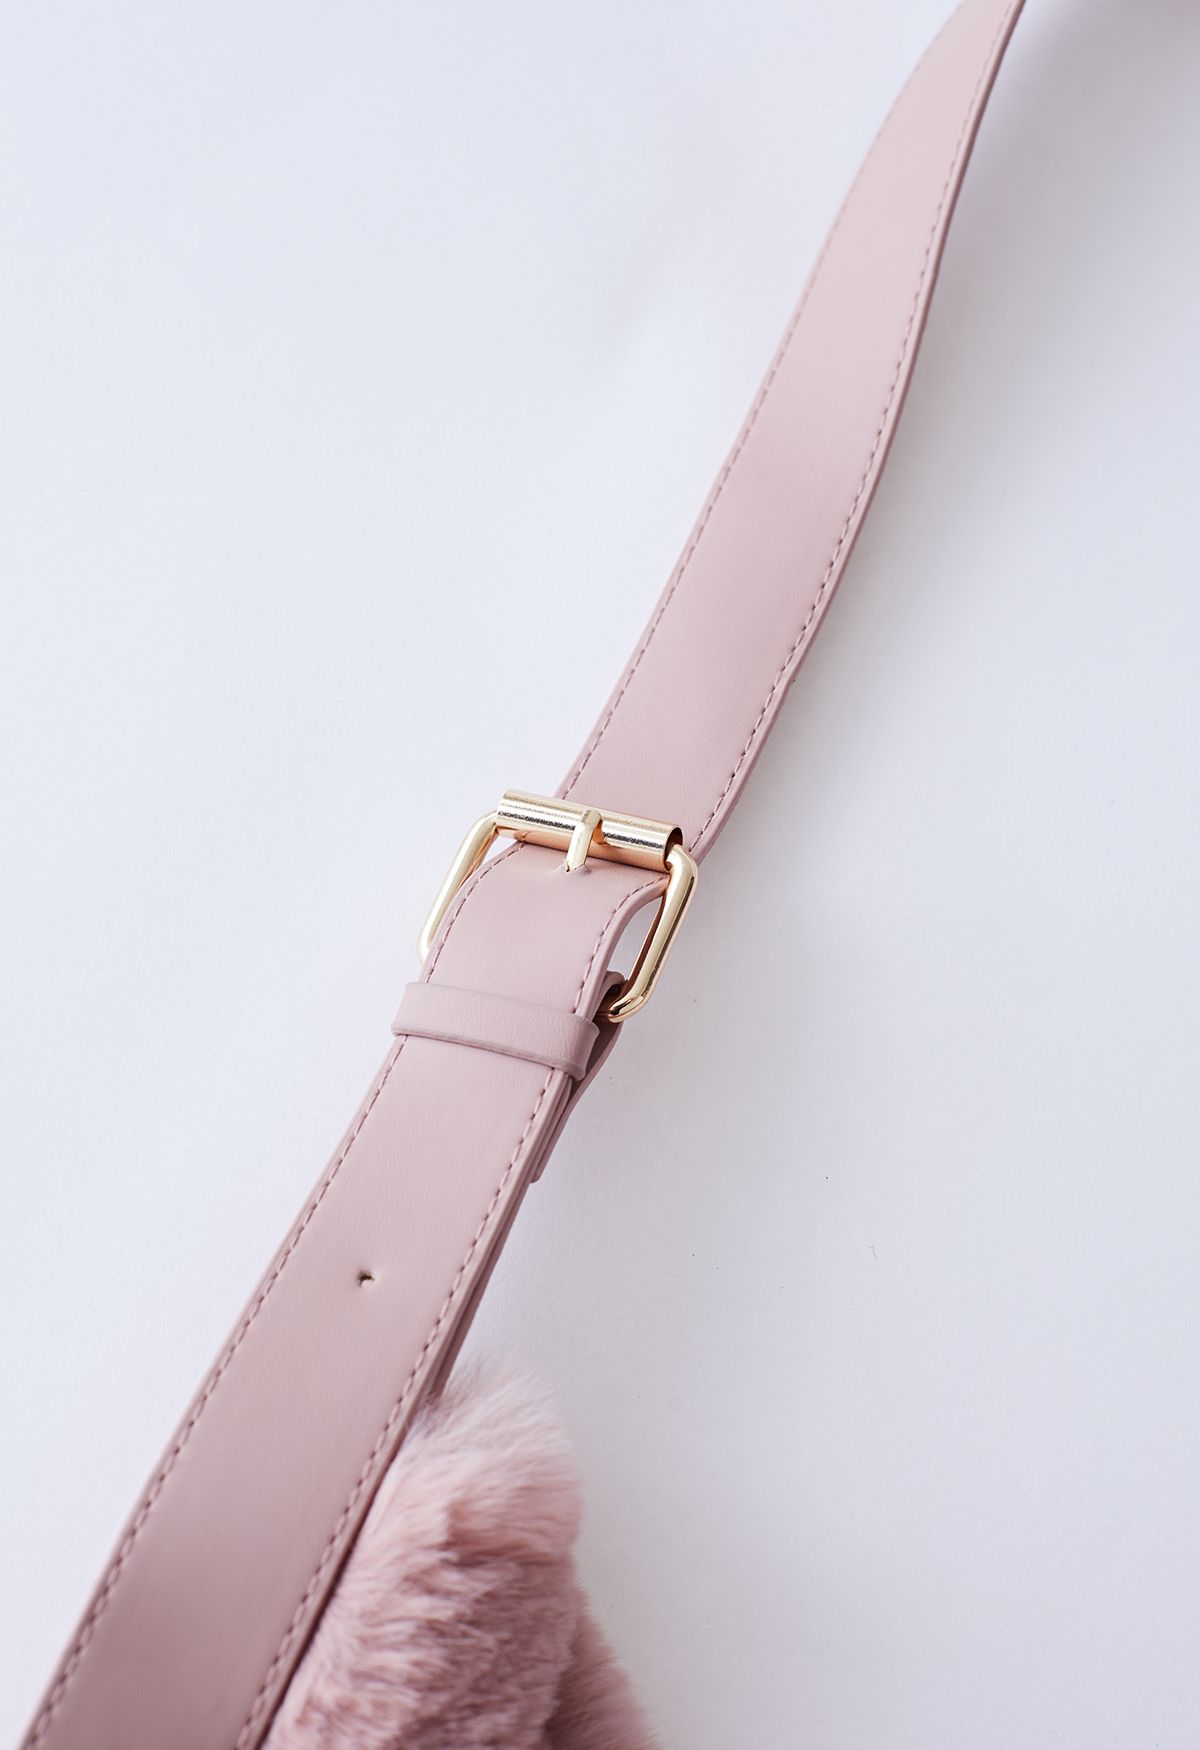 Ultra-Soft Faux Fur Shoulder Bag in Pink